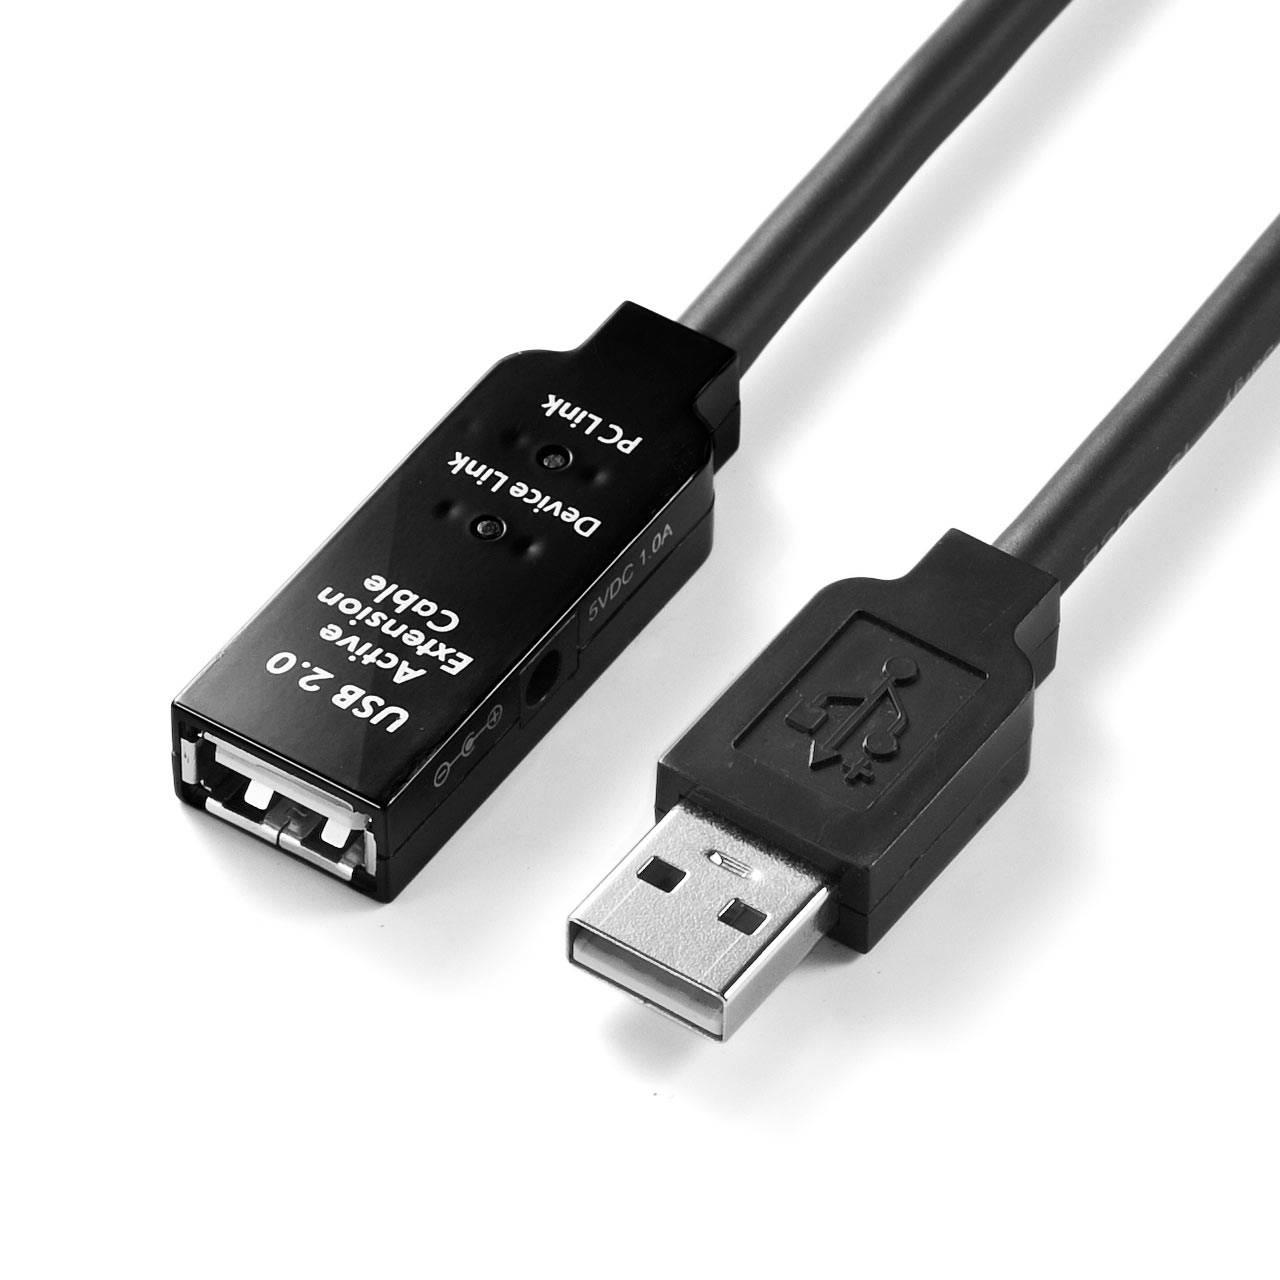 USB2.0P[ui50mEubNj 500-USB007-50